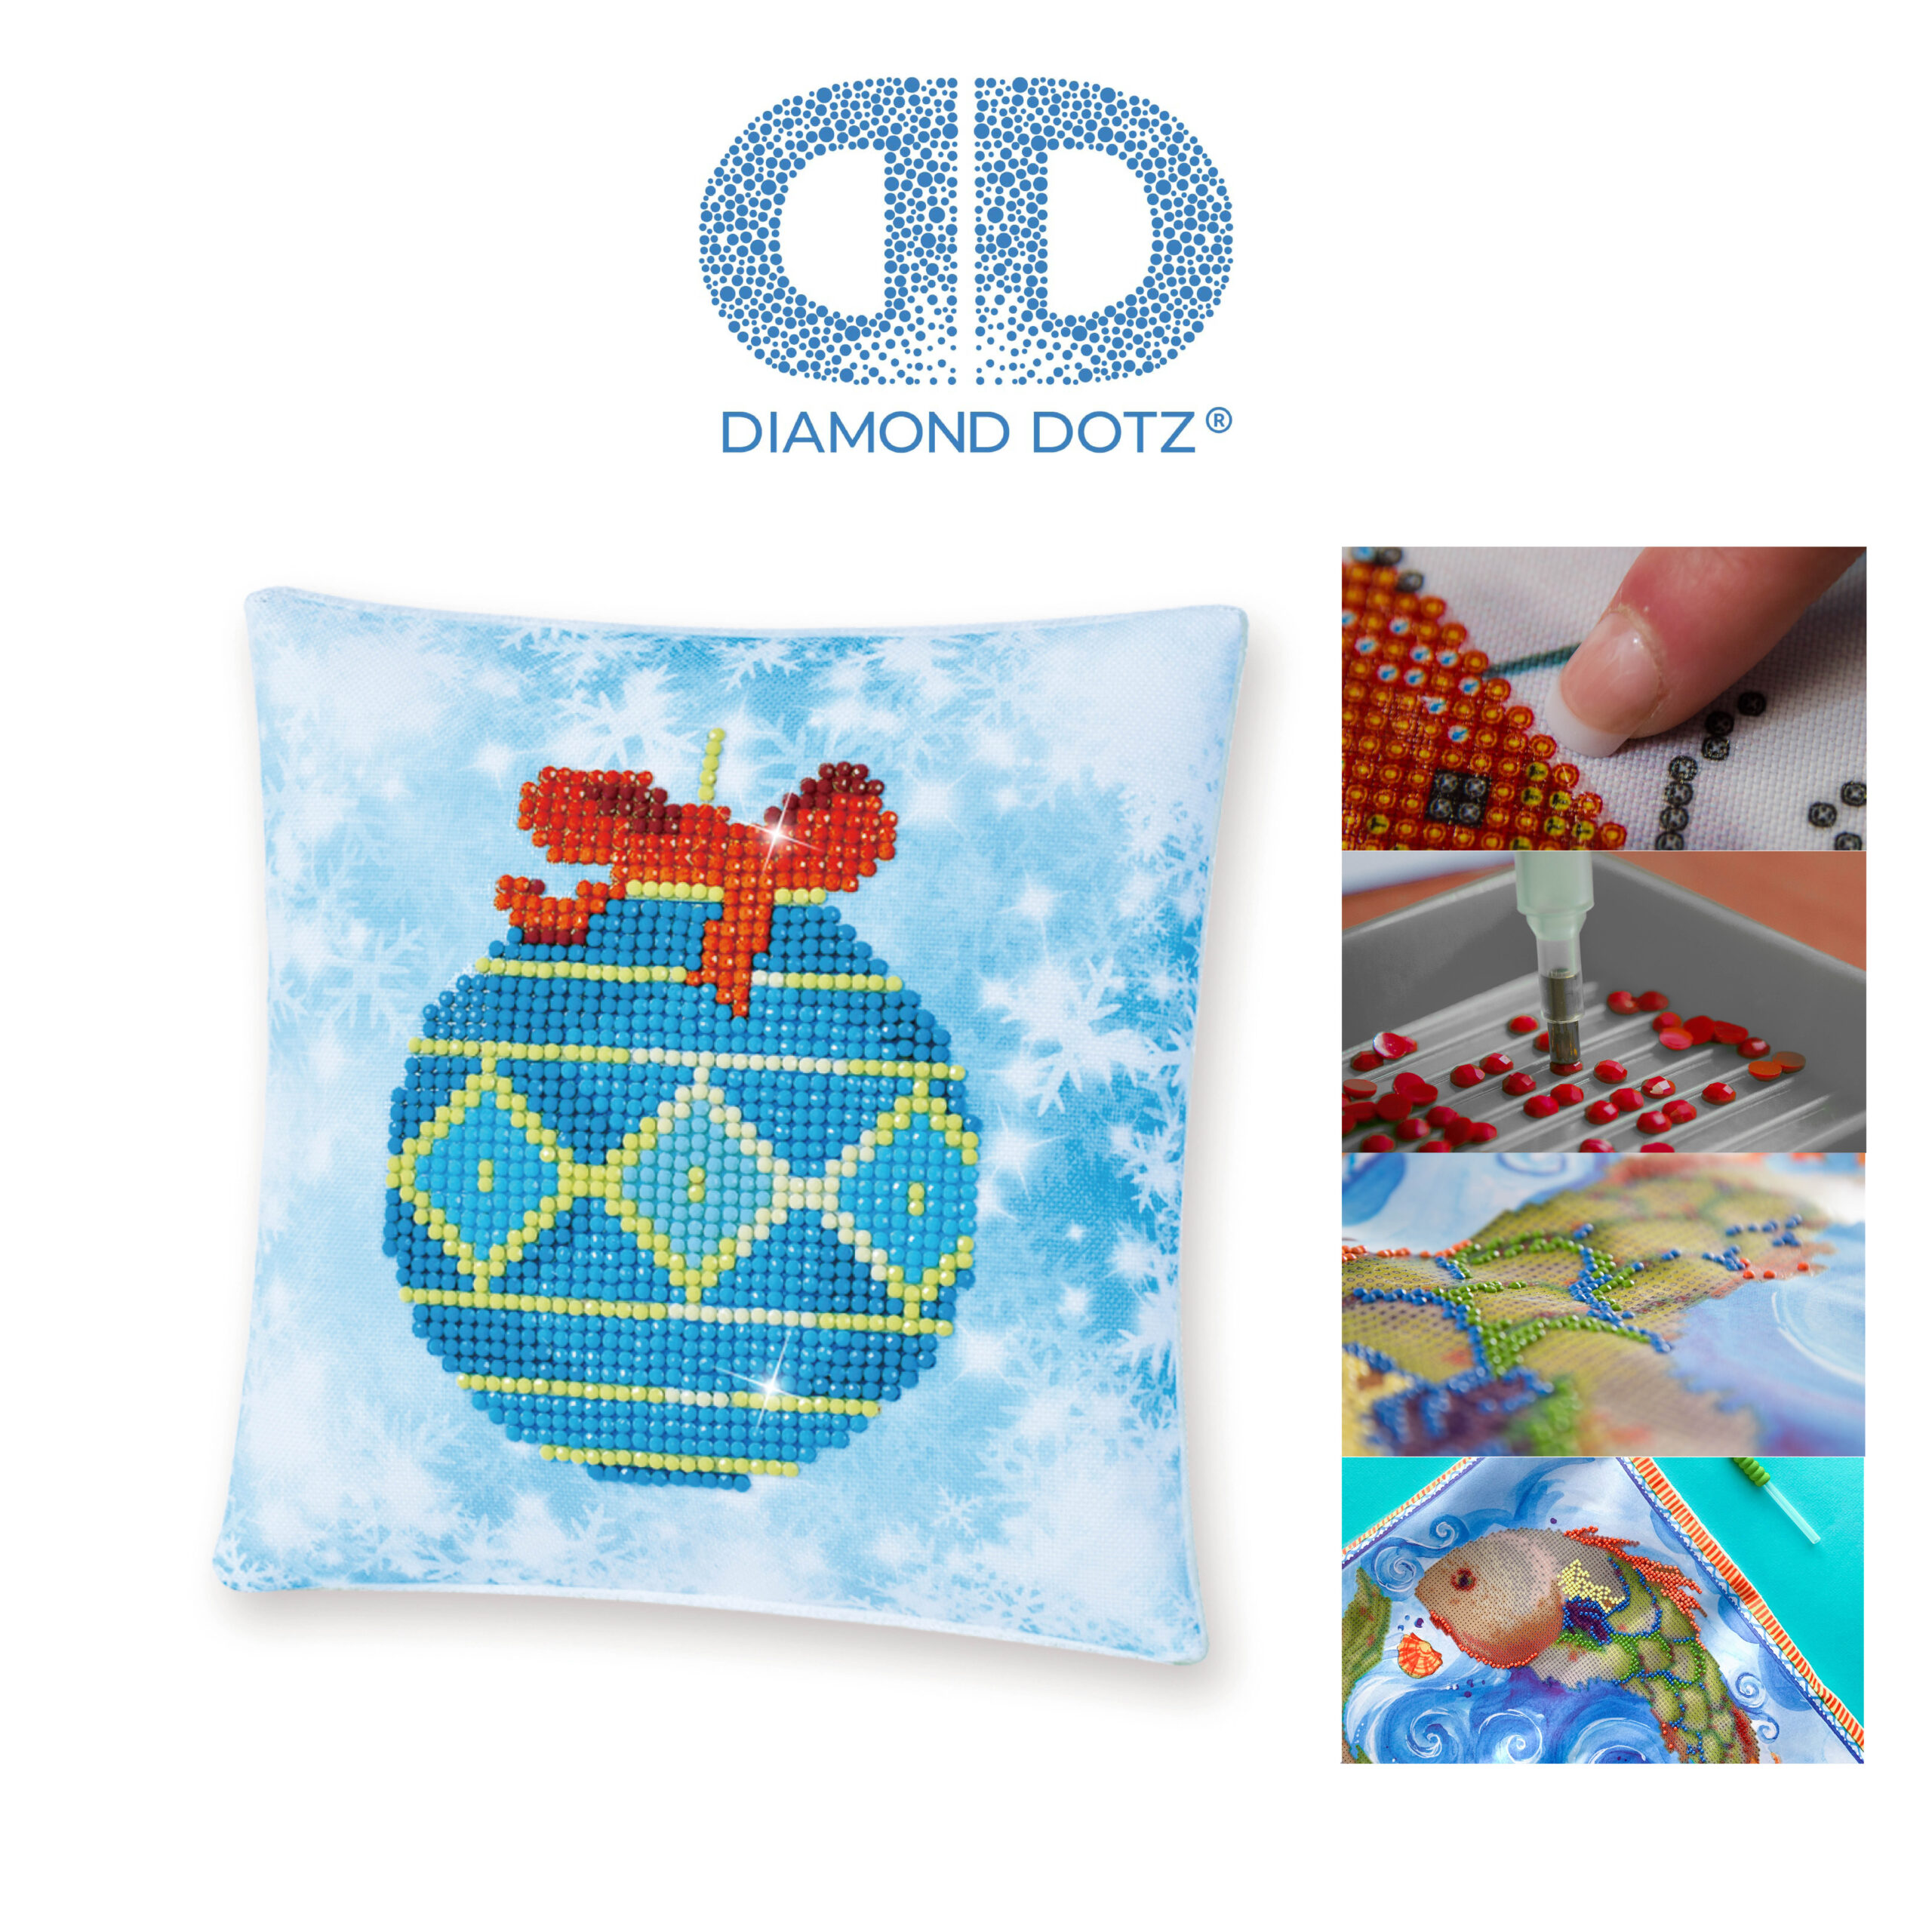 Diamond Dotz Kissenbezug Motiv “Weihnachtskugel”, funkelndes Kissen zum  Selbstgestalten ca. 18 cm x 18 cm groß, Malen mit Diamanten – Farbenspiel